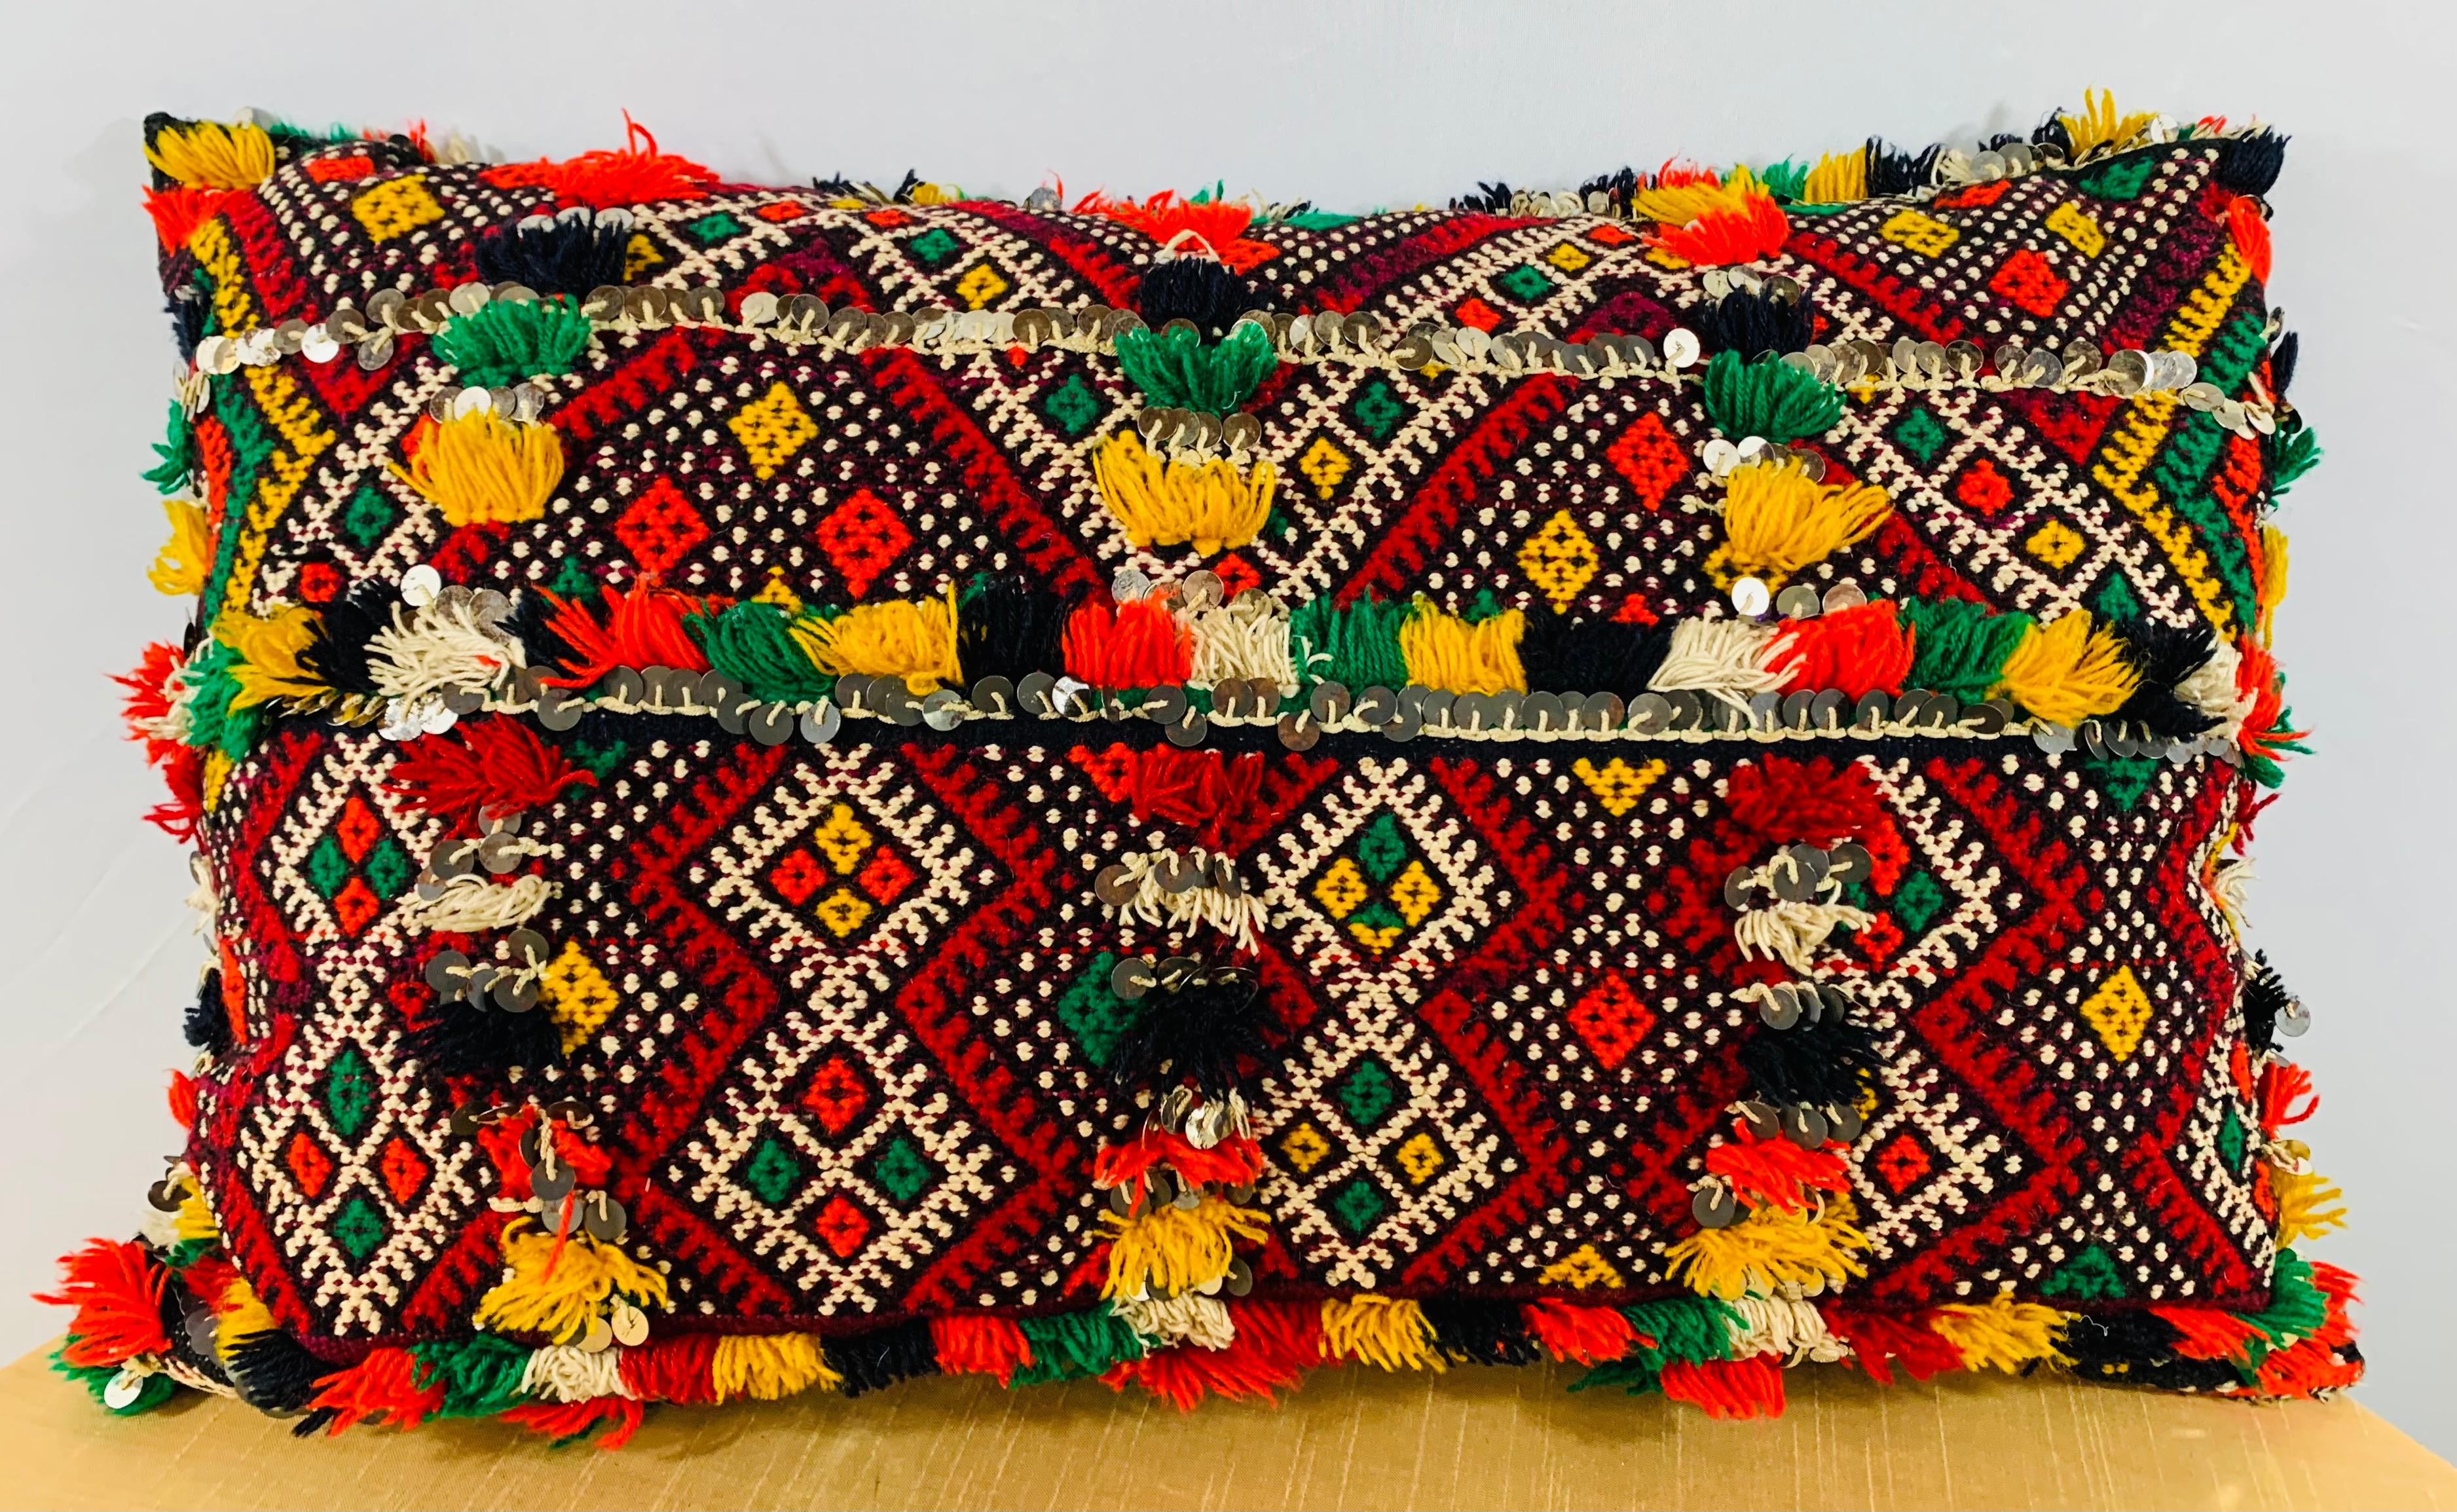 Handgewebt von Berberfrauen aus hochwertiger Wolle im marokkanischen Atlasgebirge. Dieses Kissen wurde aus Vintage-Stoffen hergestellt und zeichnet sich durch seine einzigartige Farbgebung, die herrlichen geometrischen Berbermuster und die schönen